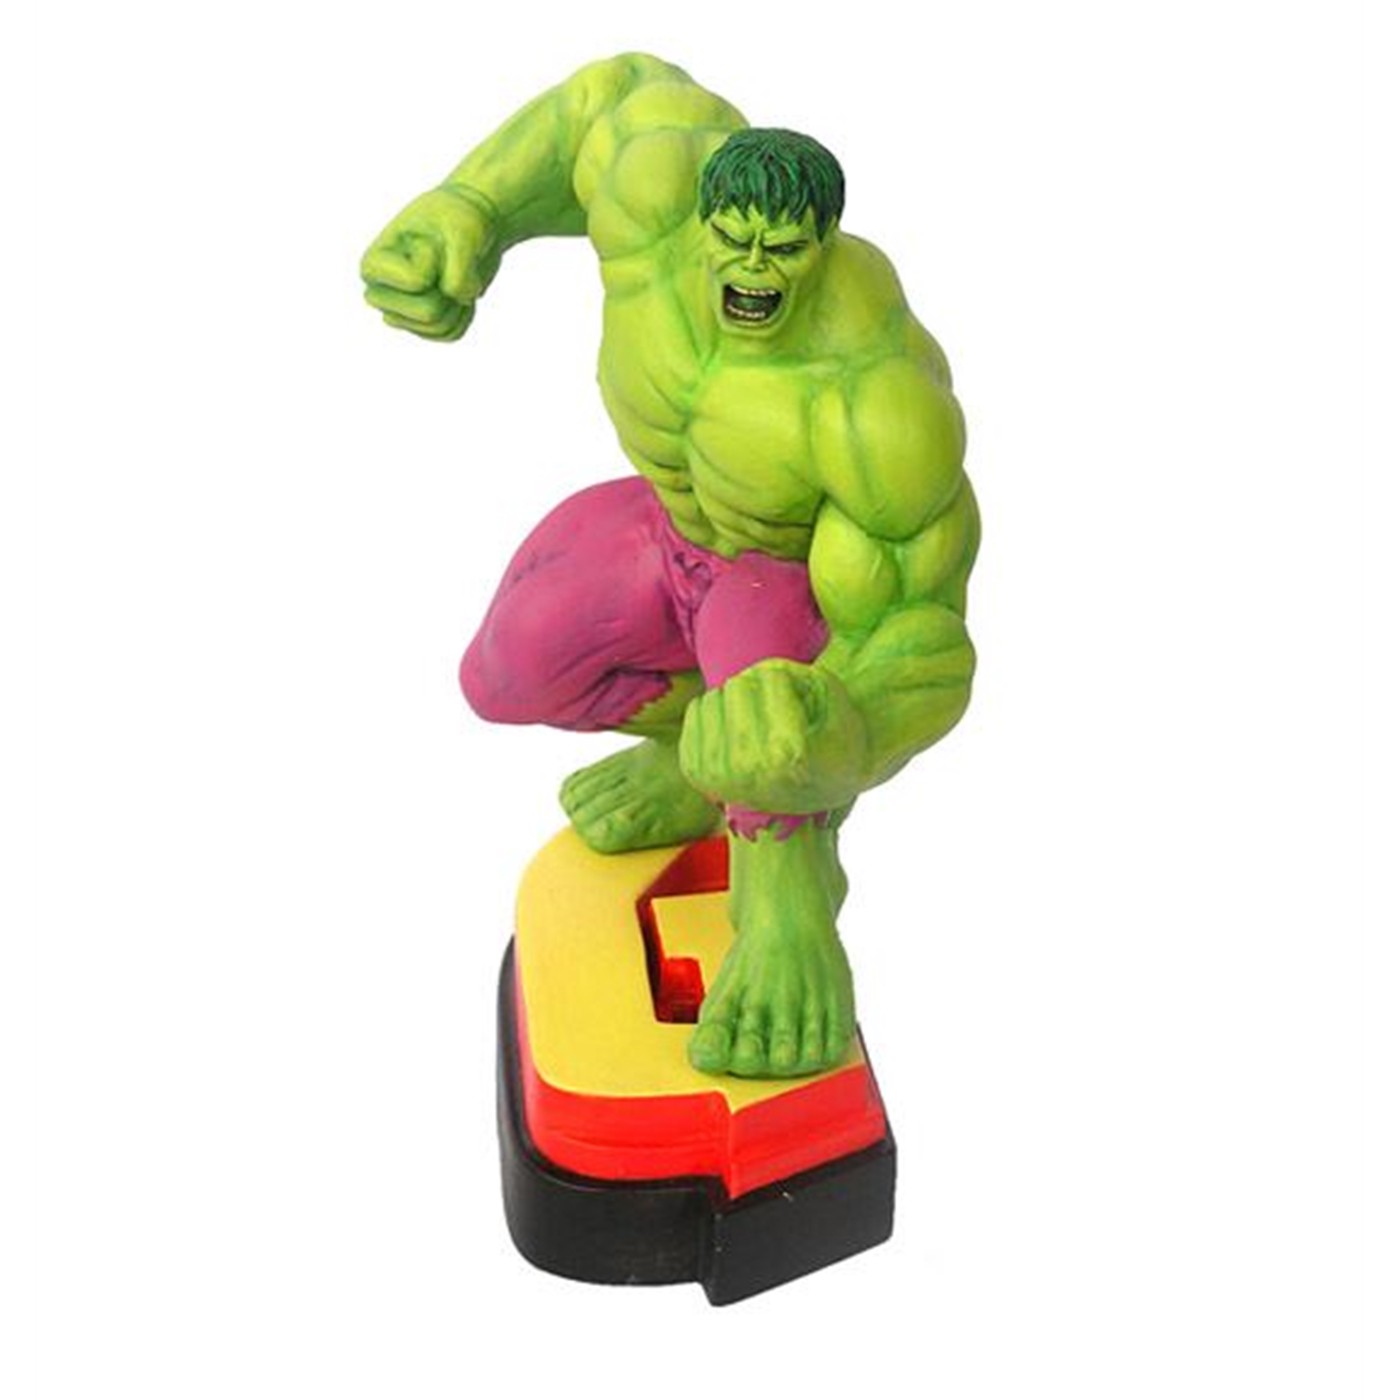 Hulk Avengers "G" Figural Paperweight